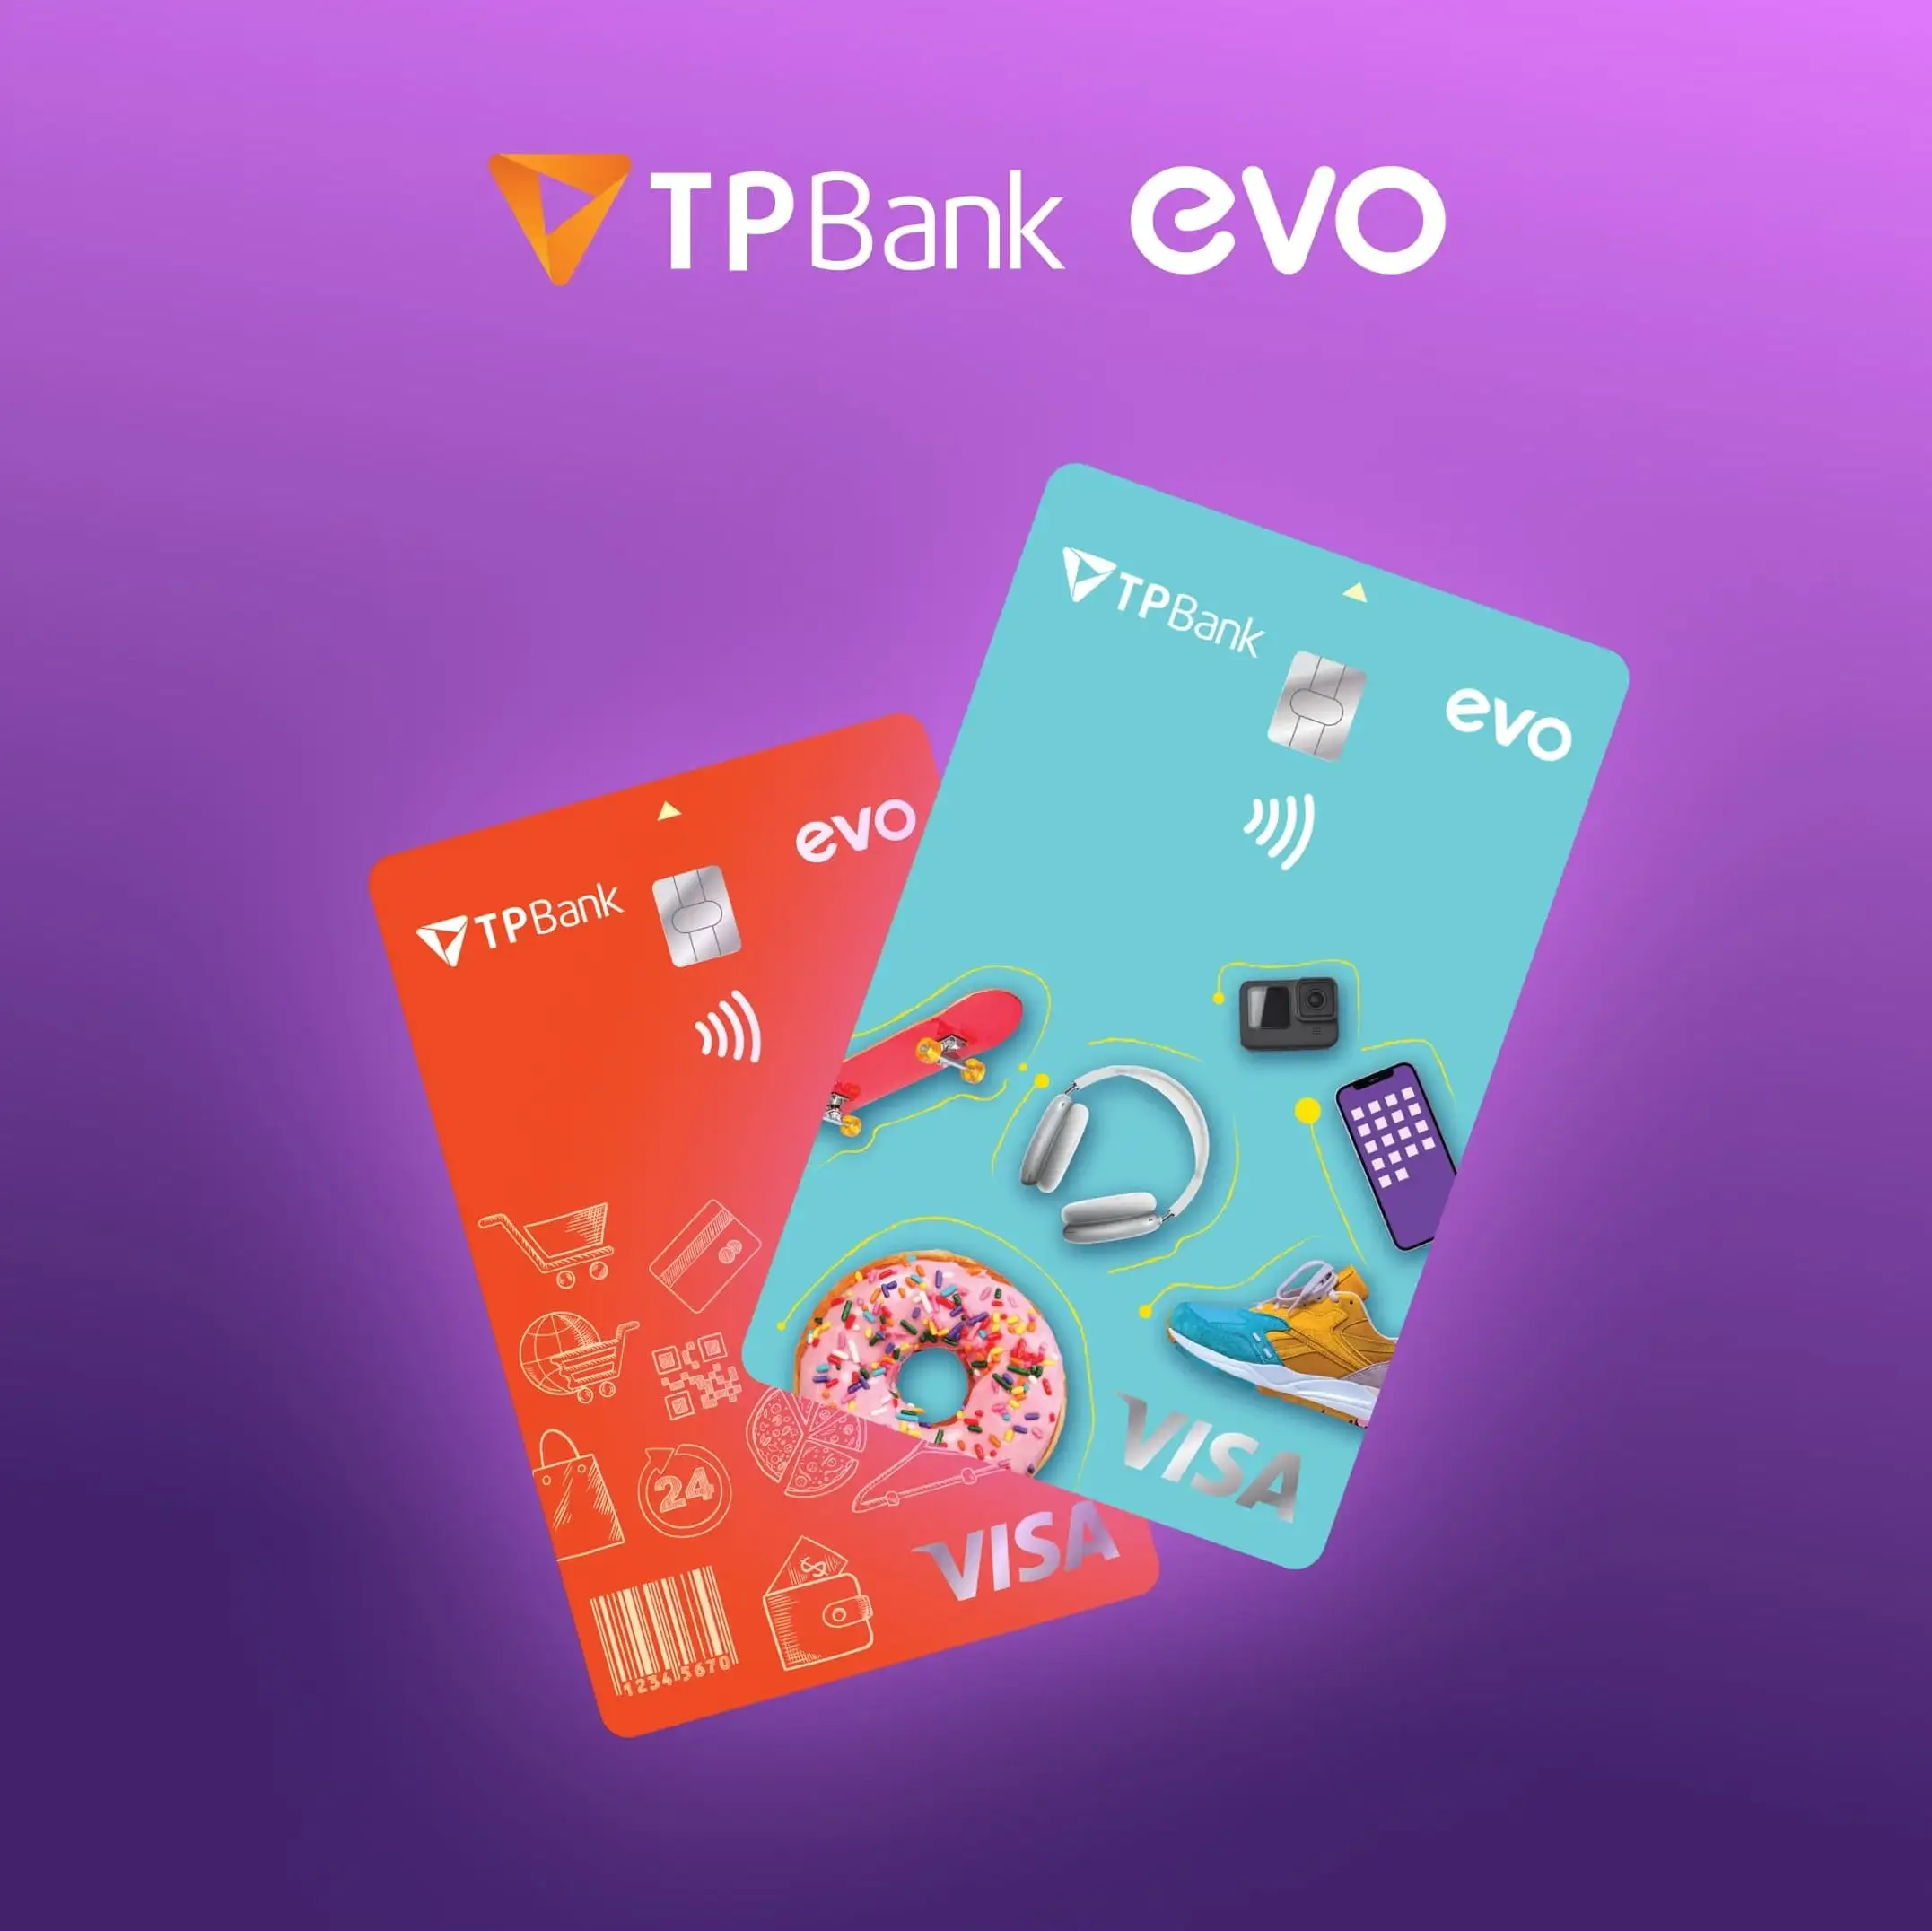 Thẻ tín dụng TPBank EVO có tính năng gì nổi bật so với các loại thẻ khác?
